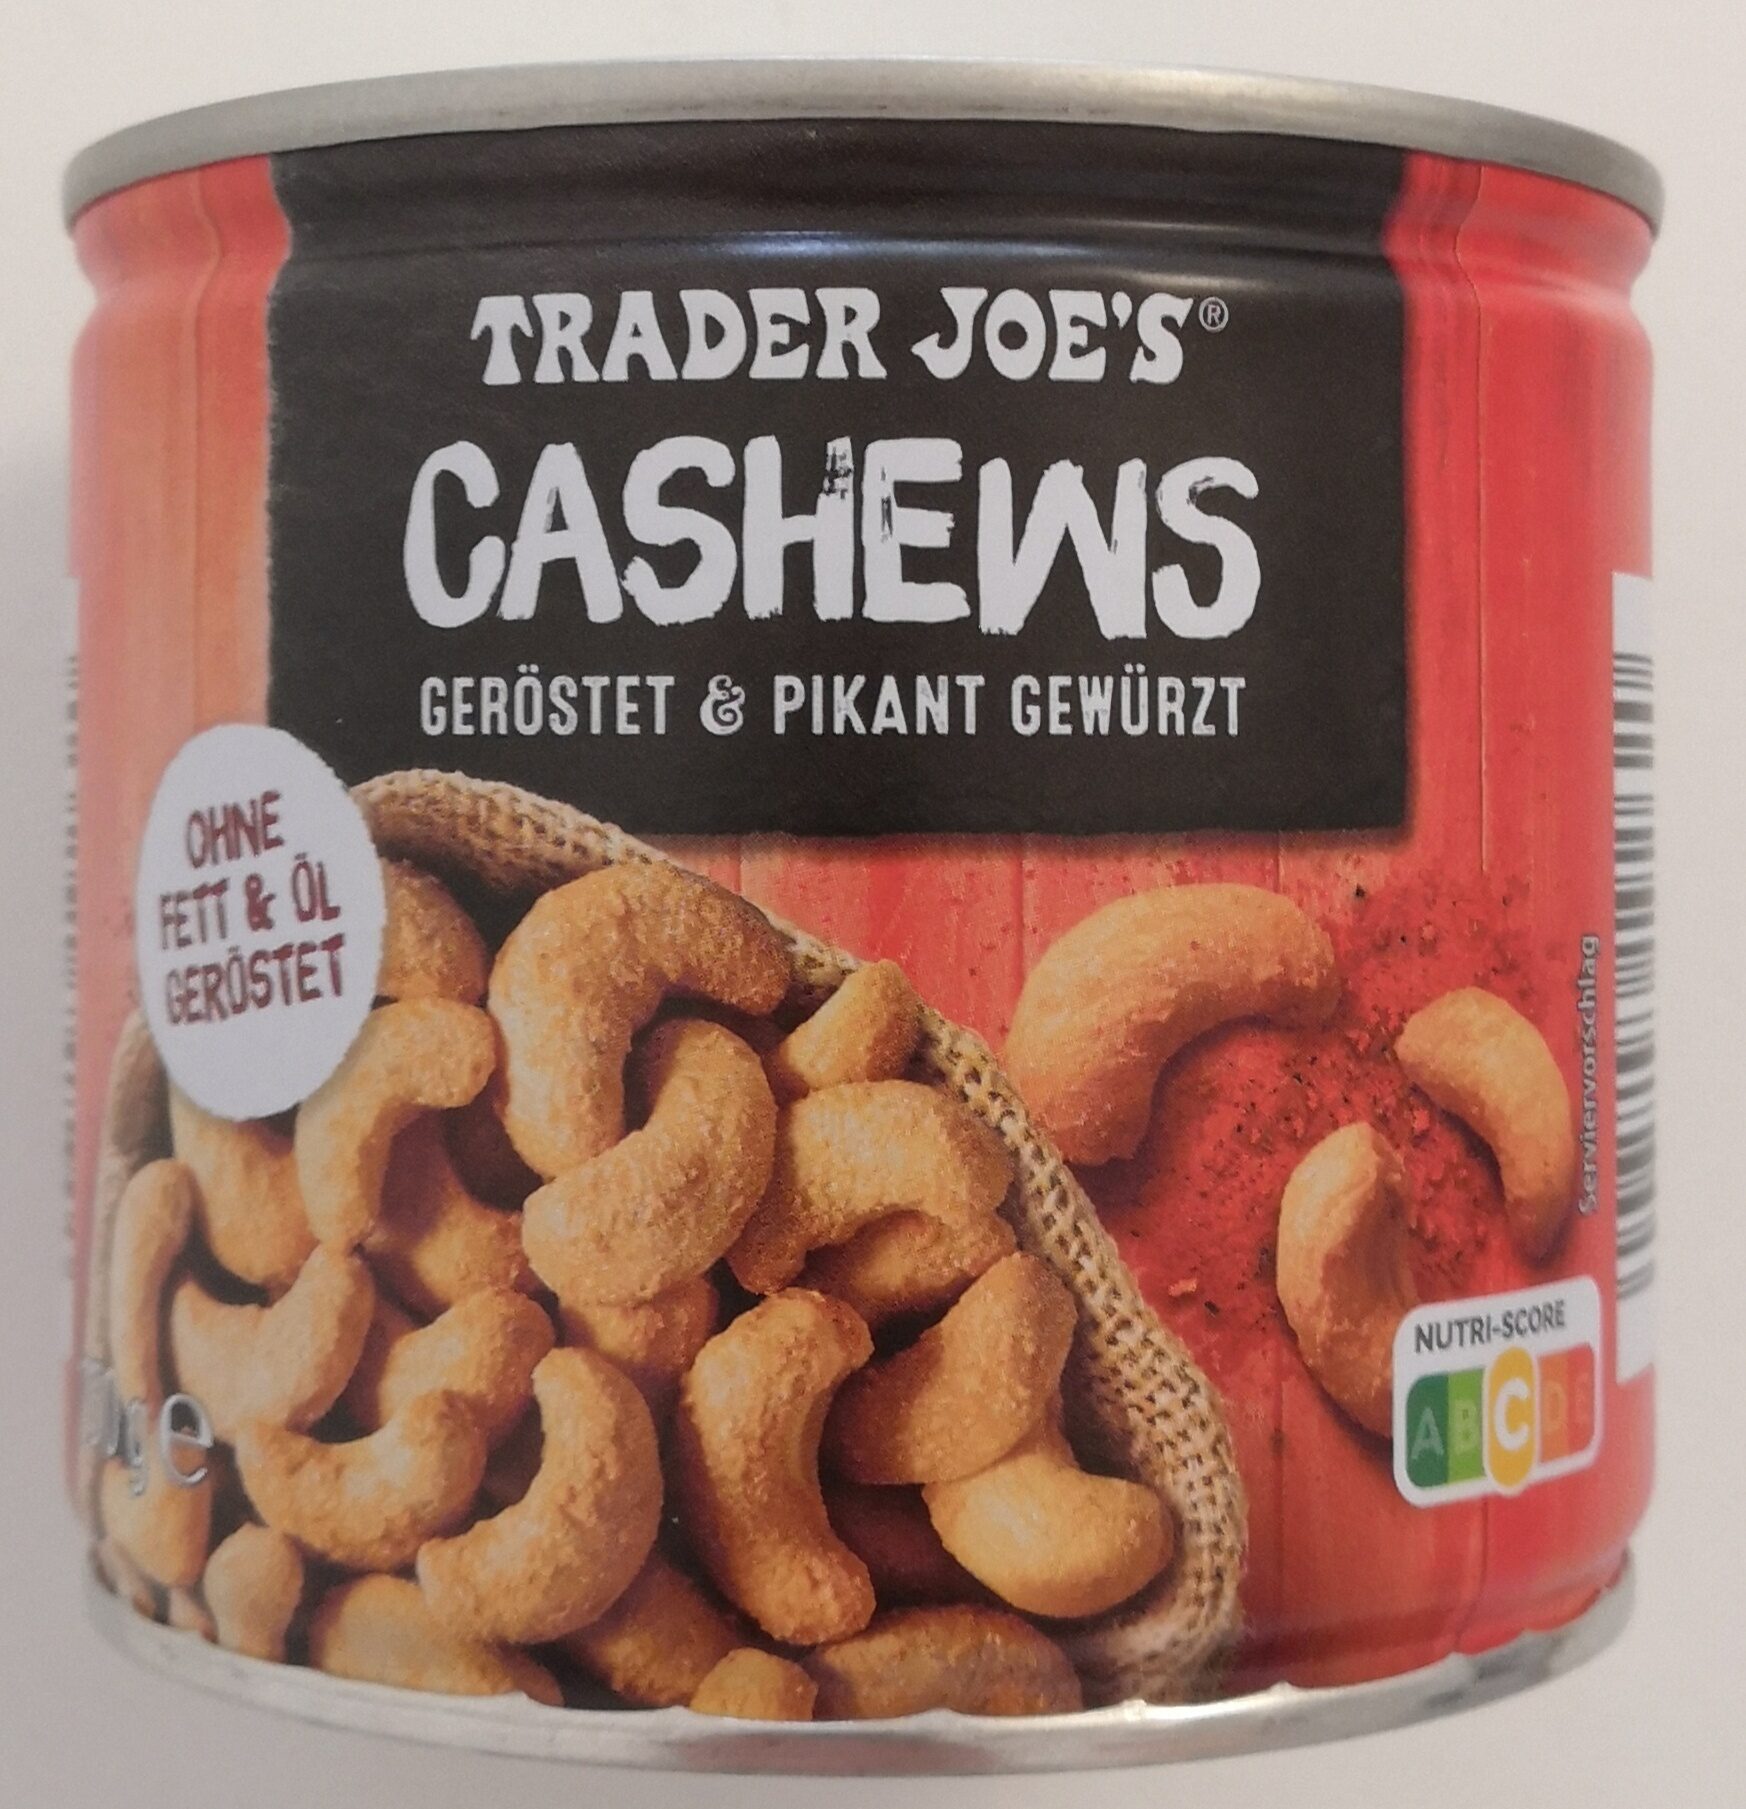 Cashews, geröstet & pikant gewürzt - Produkt